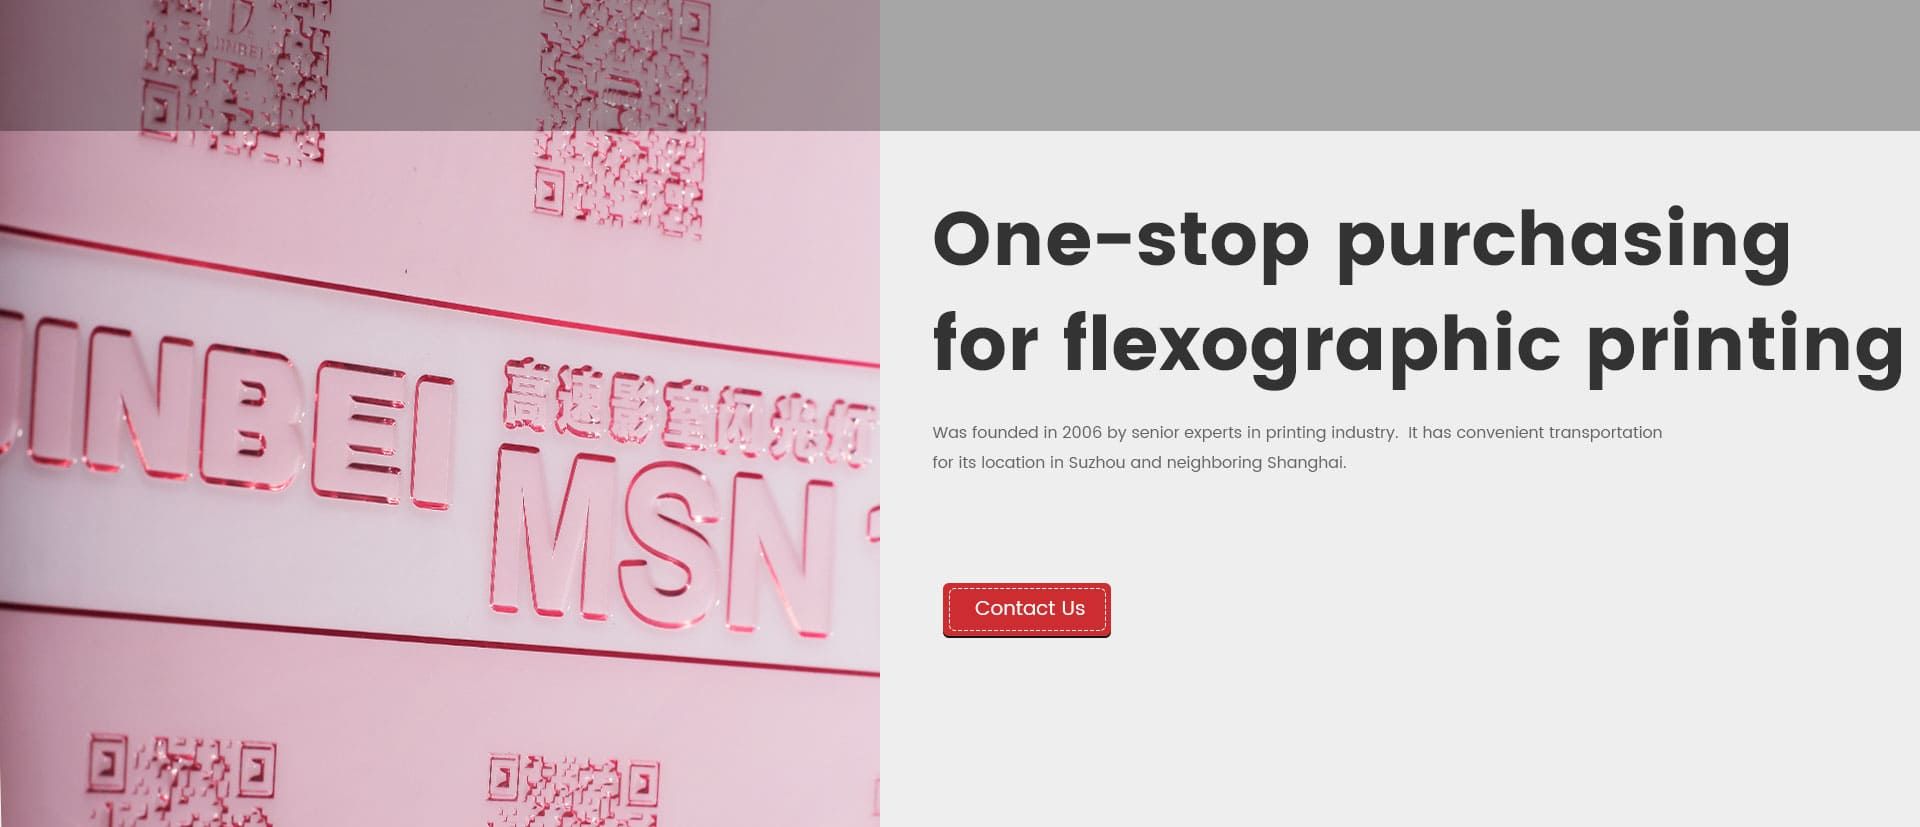 Analog Flexographic Printing Plate